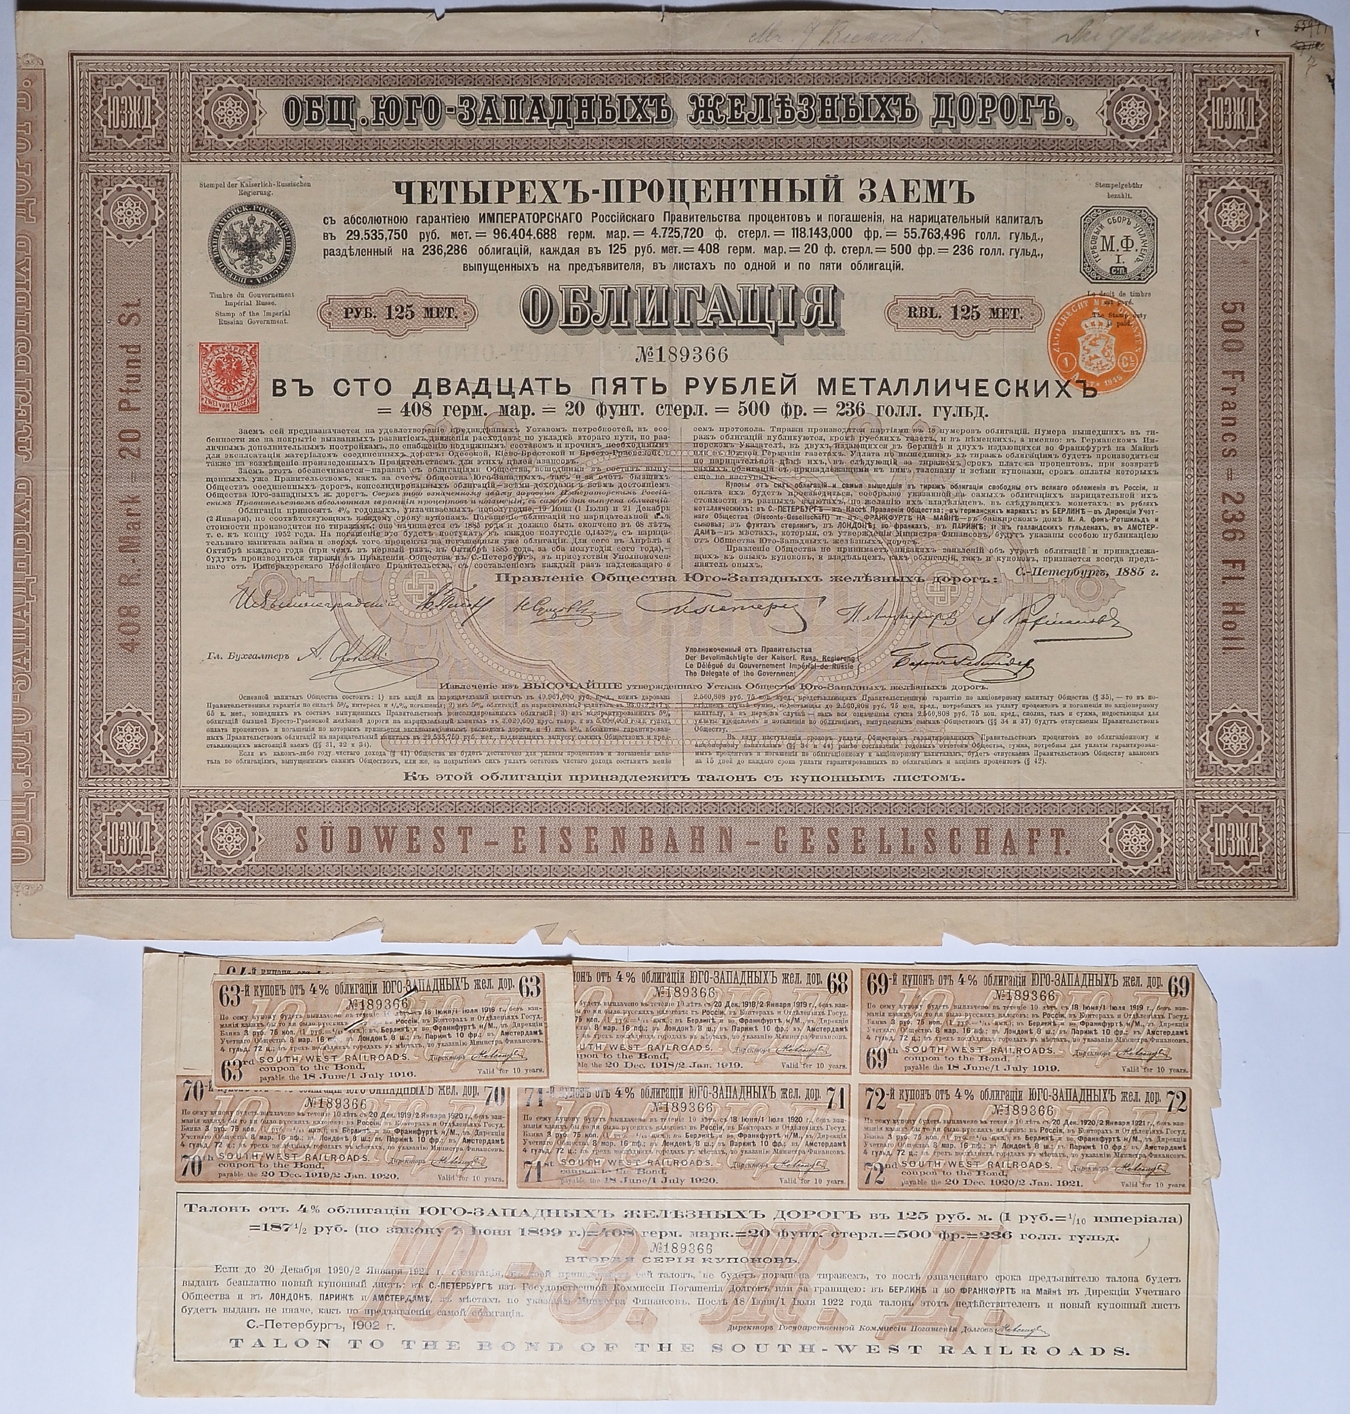 Облигация 1918 года. Ценные бумаги США на предъявителя. Российские ценные бумаги дорогие\. Уссурийская железная дорога ценная бумага.